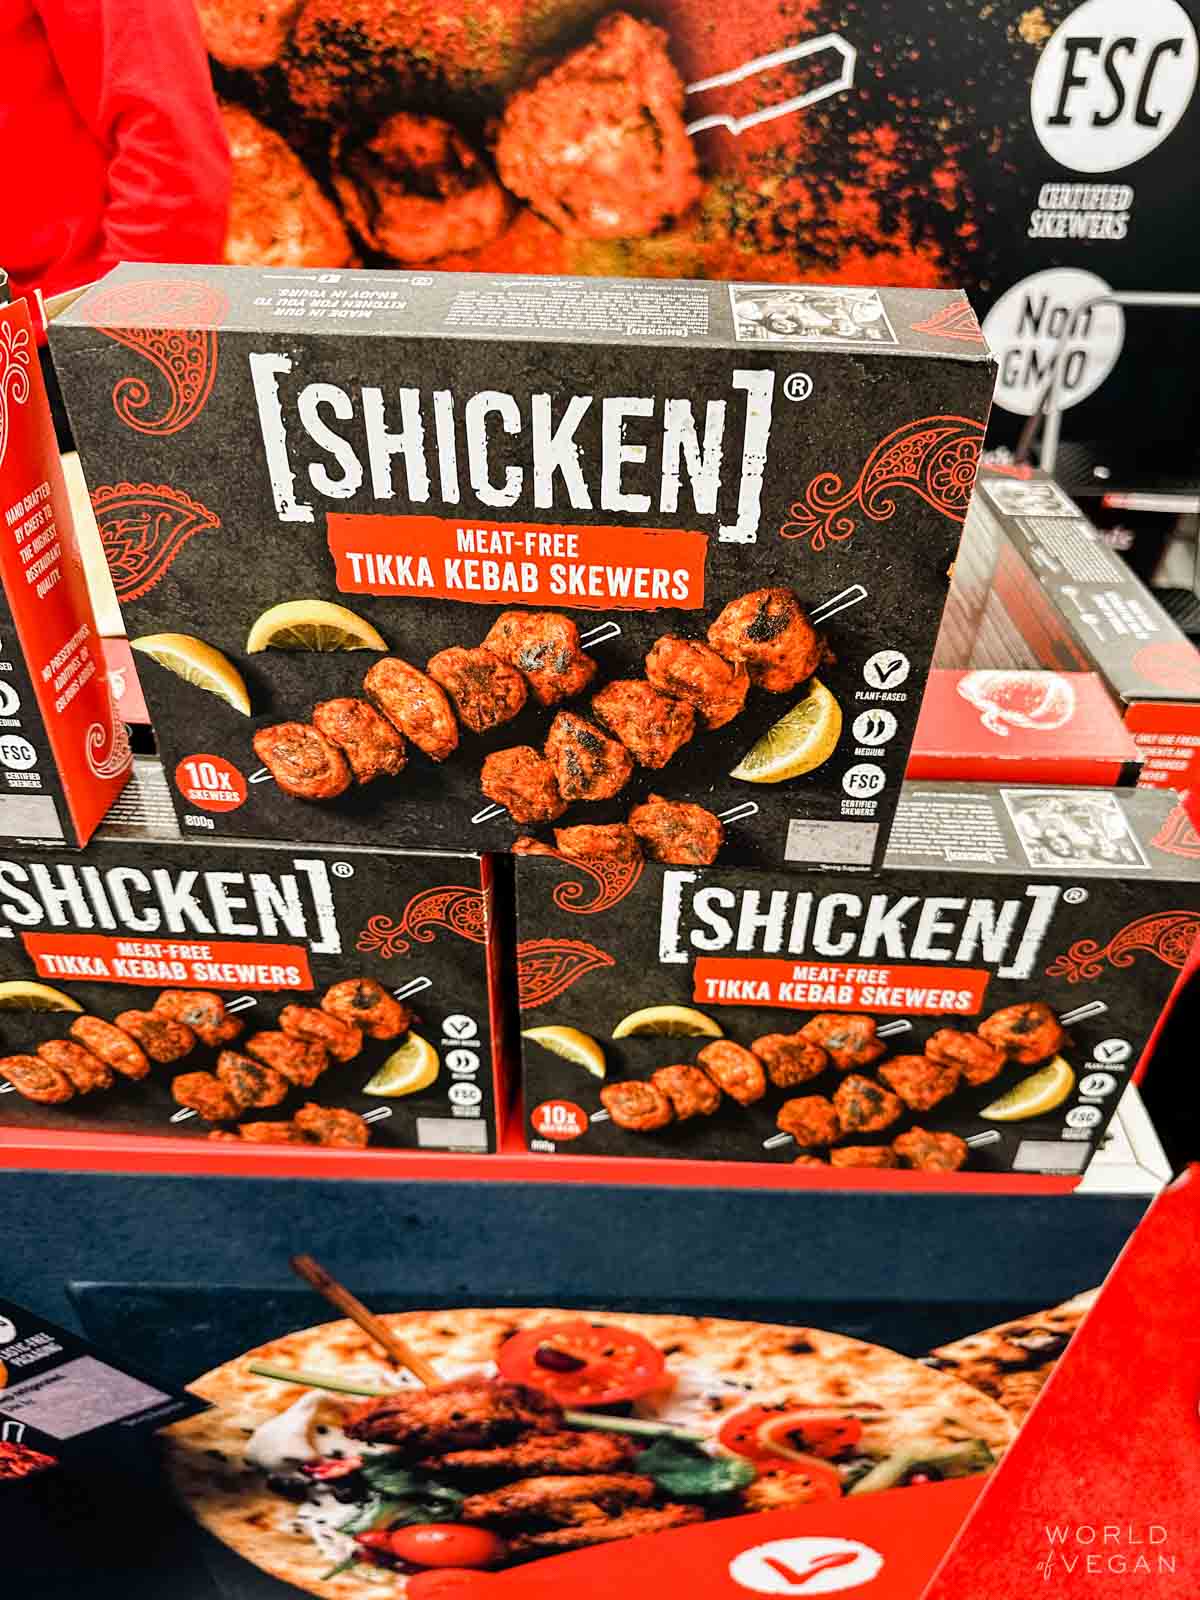 A package of Shicken brand meat-free kebab skewers.